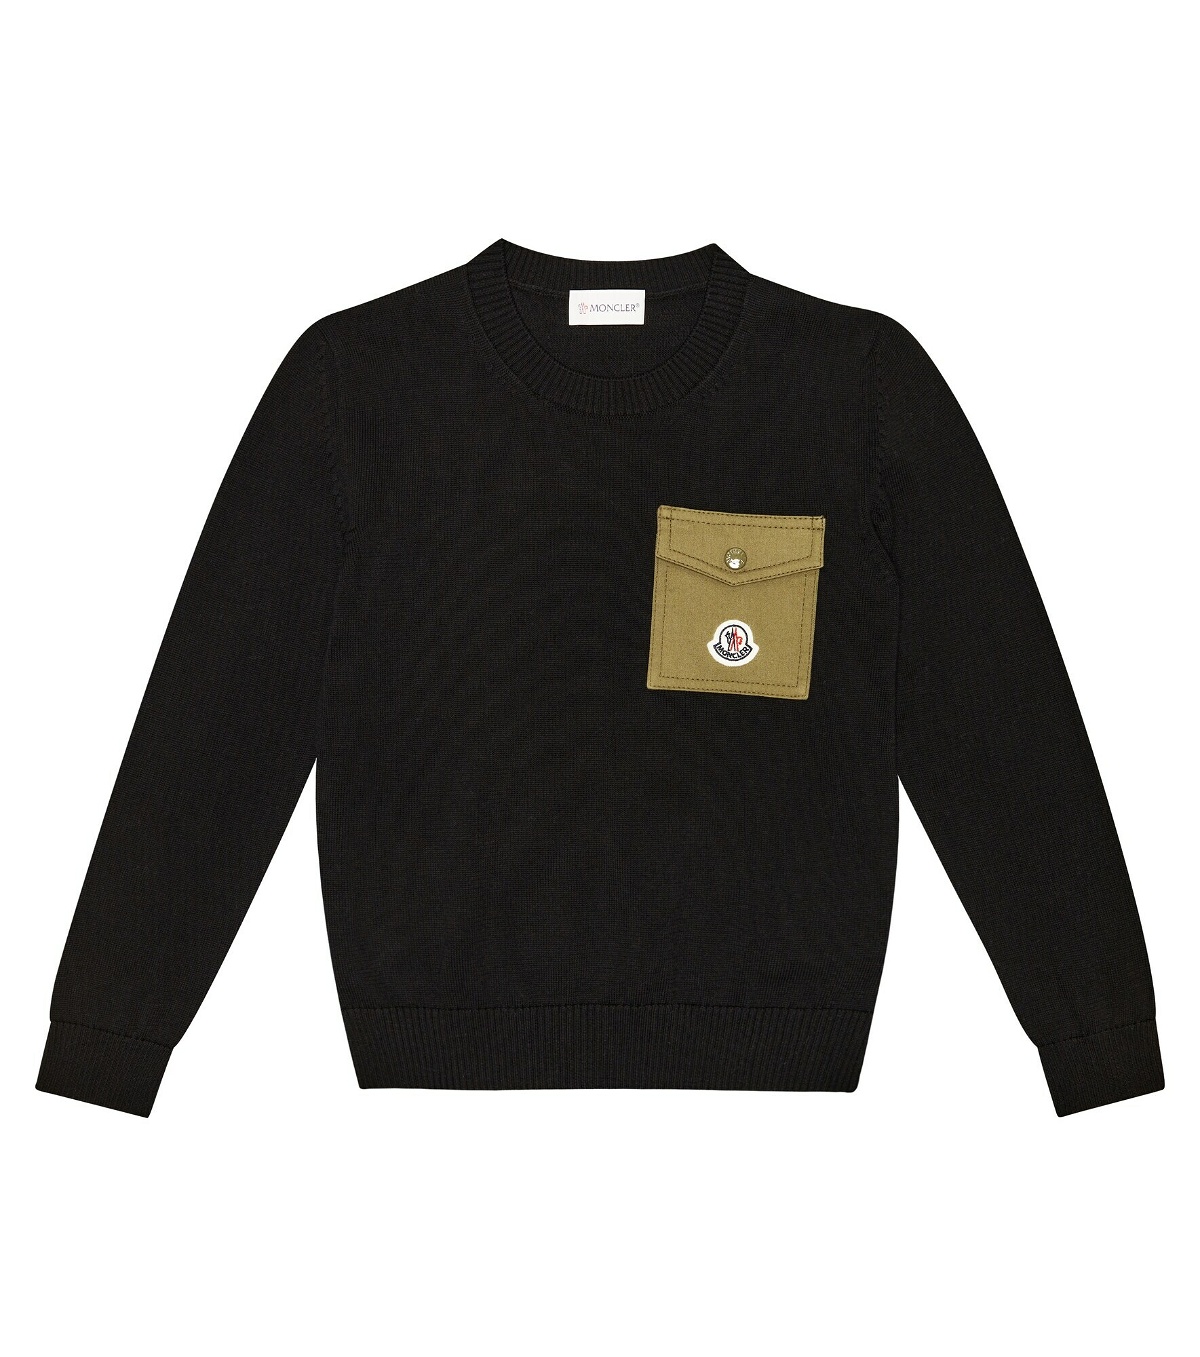 Moncler Enfant - Ribbed-knit logo sweater Moncler Enfant